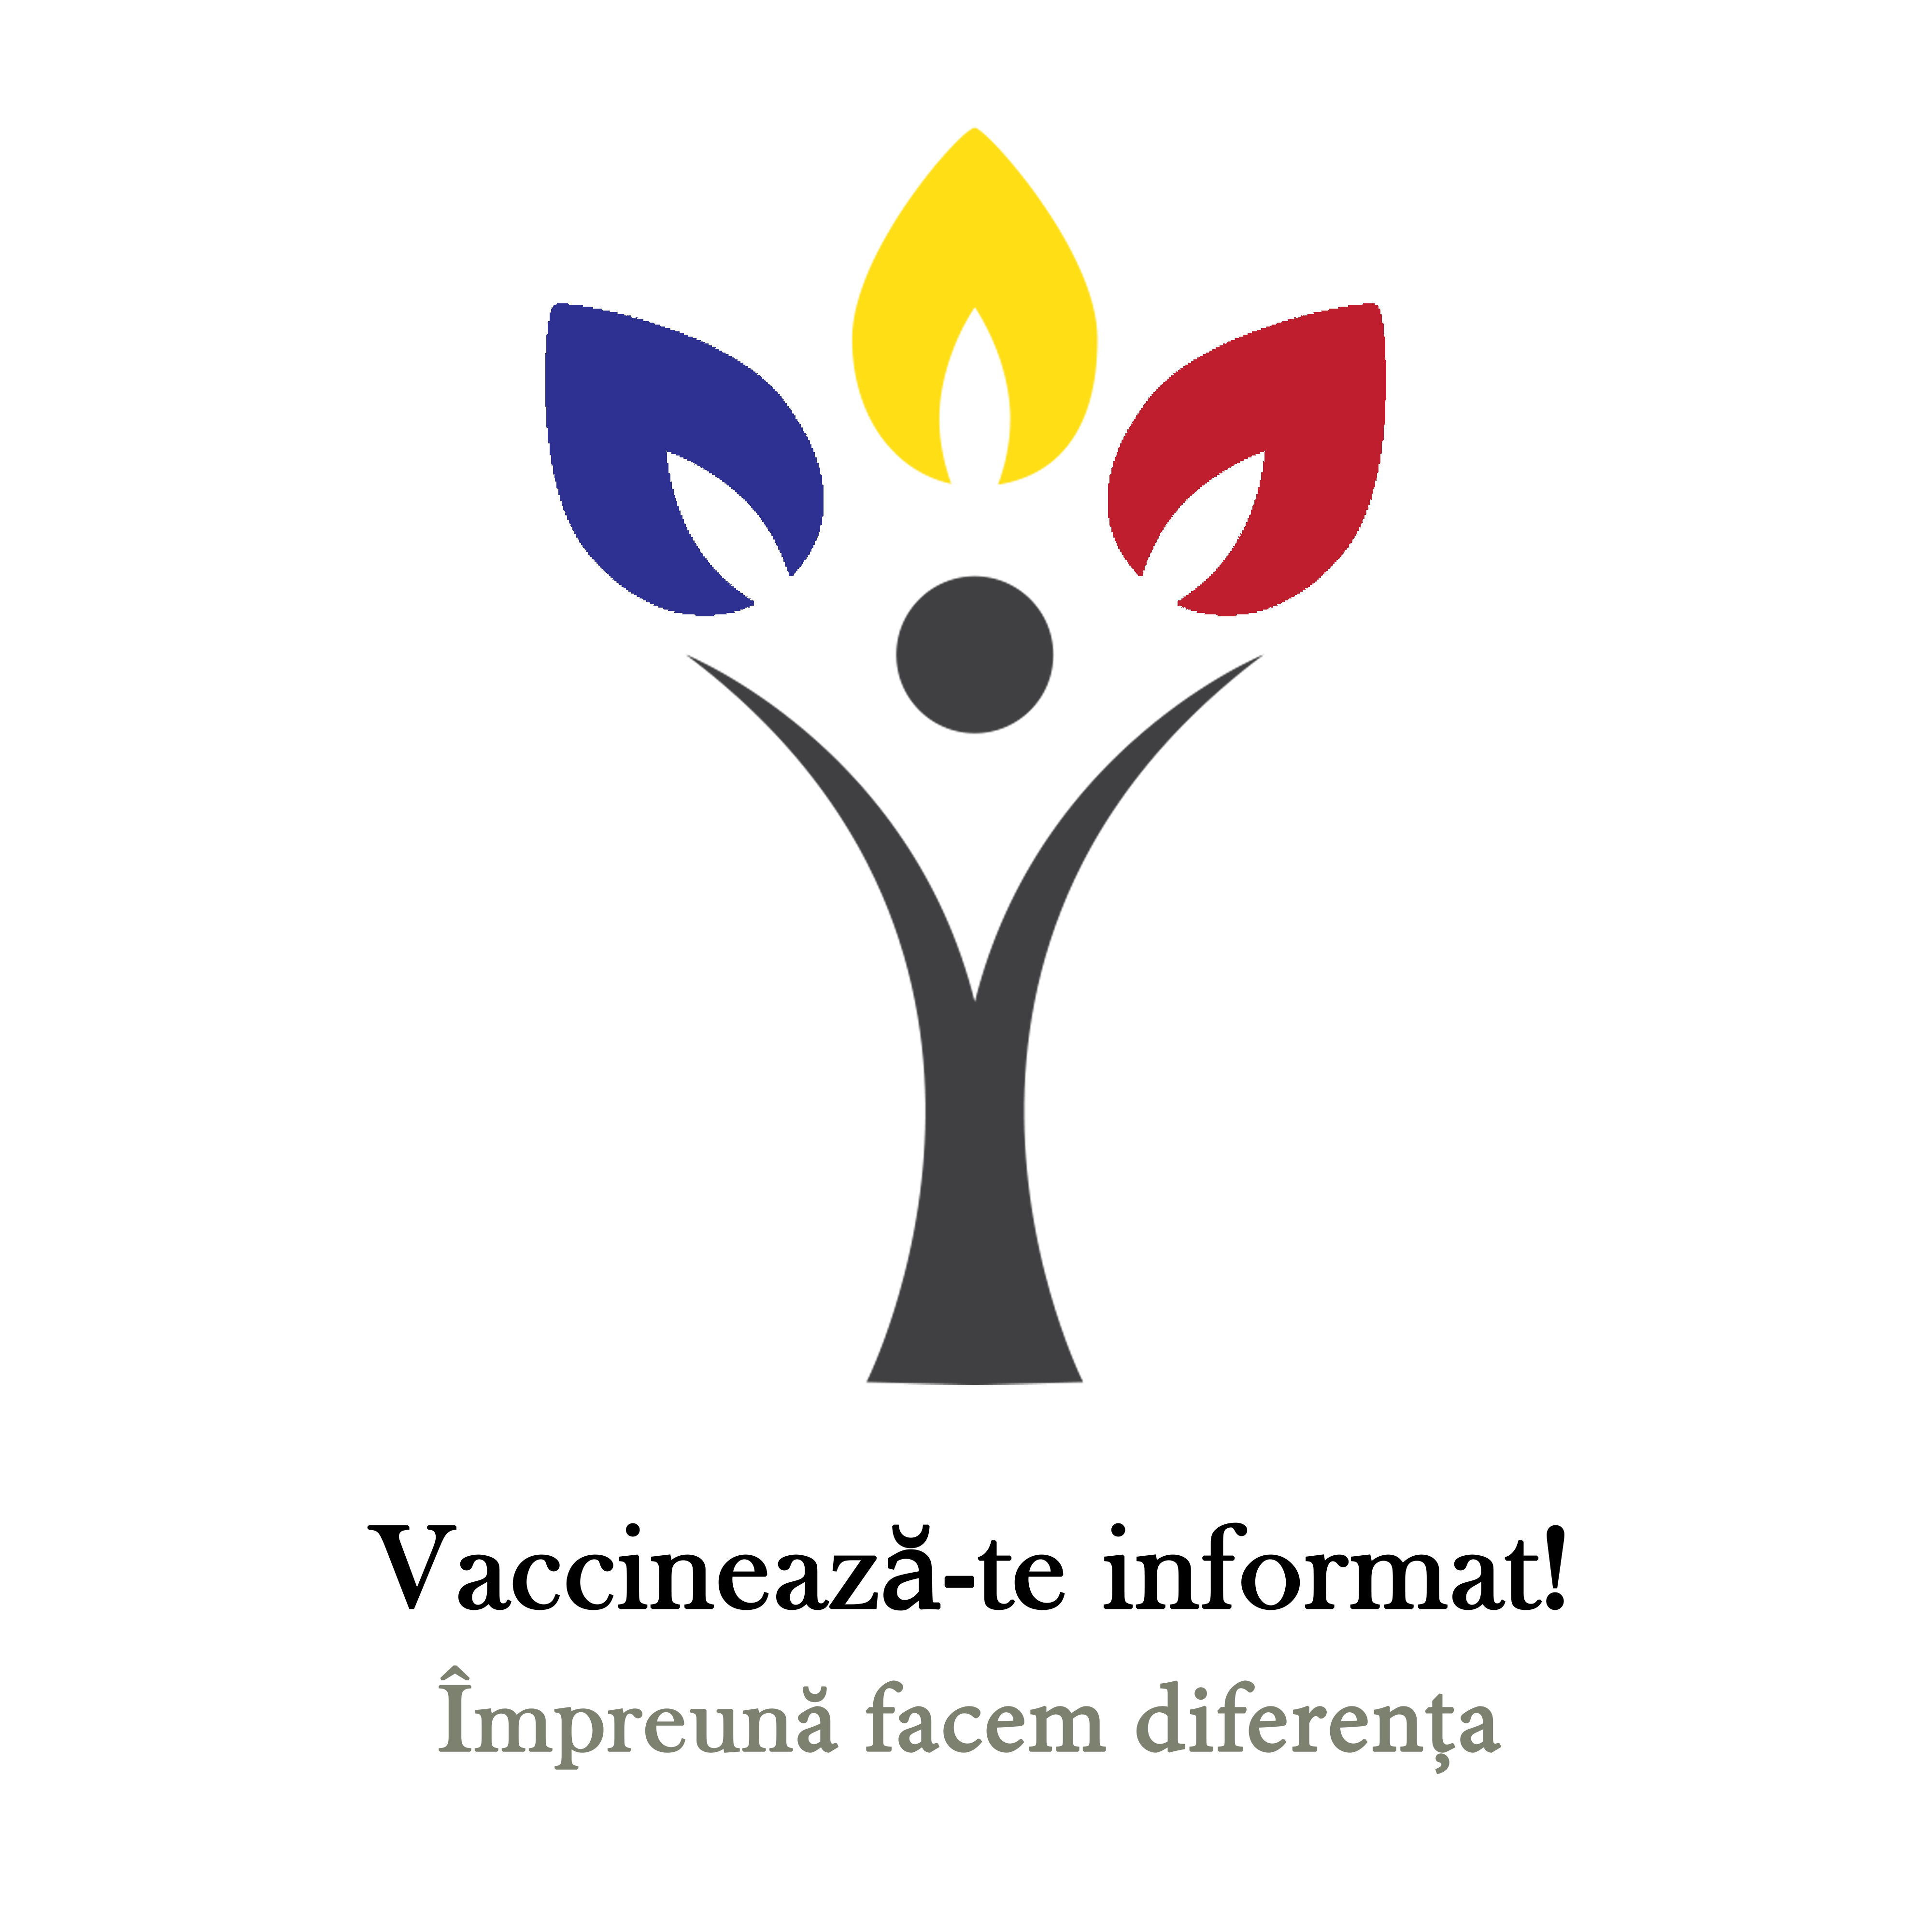 Comunicat de presă-Programare vaccinare anti COVID-19 – 18.01.2021